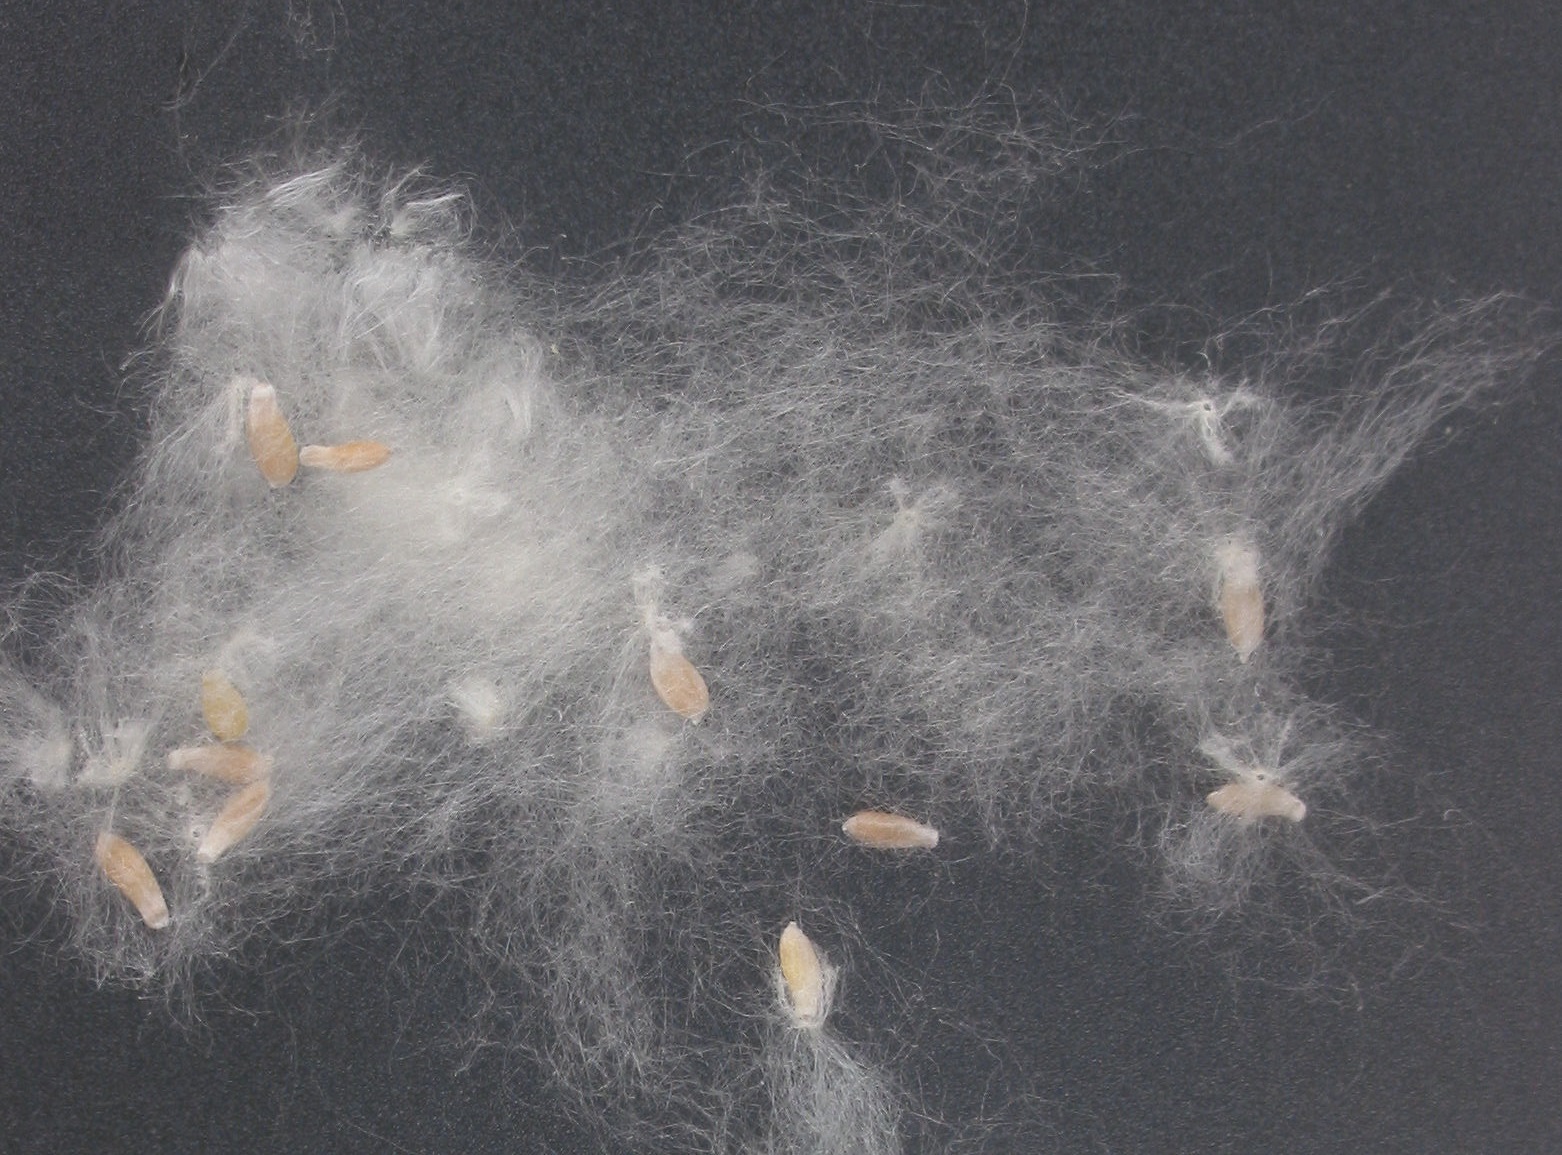 Le peuplier produit en abondance une bourre cotonneuse qui lui permet de faire voyager ses graines par le vent. Crédit photo : Rasbak